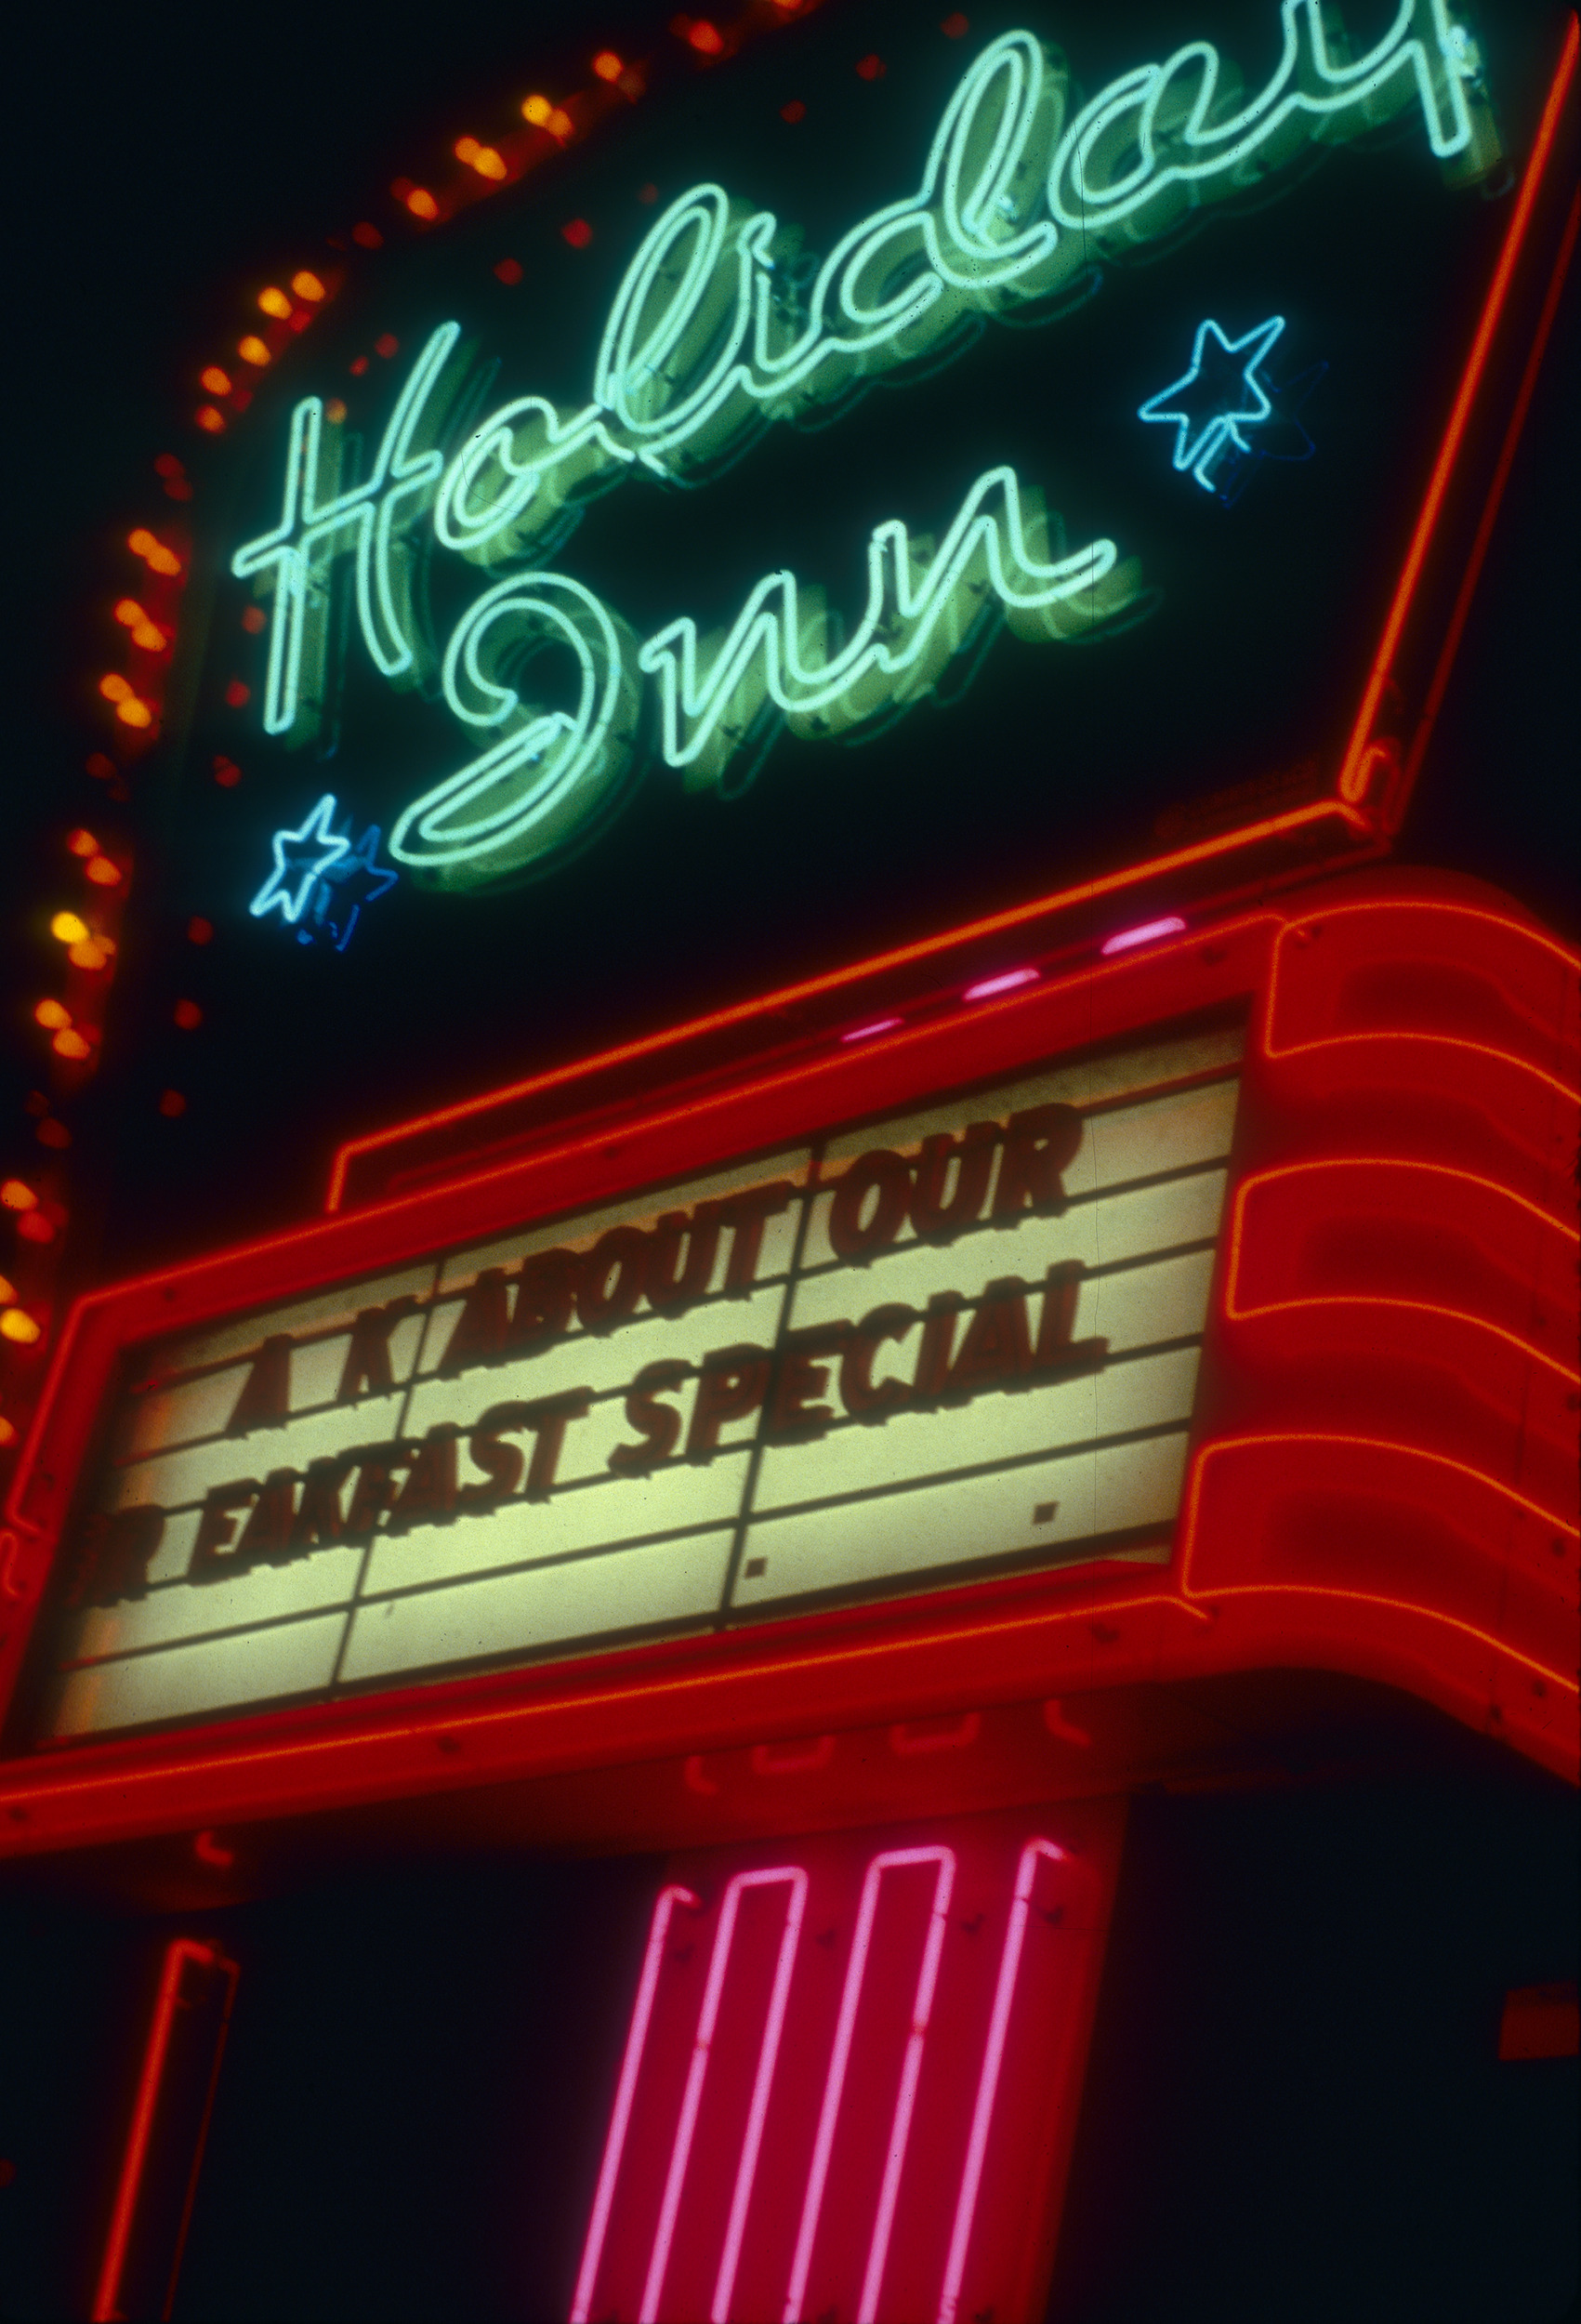 Slide of the Holiday Inn, Elko, Nevada, 1986